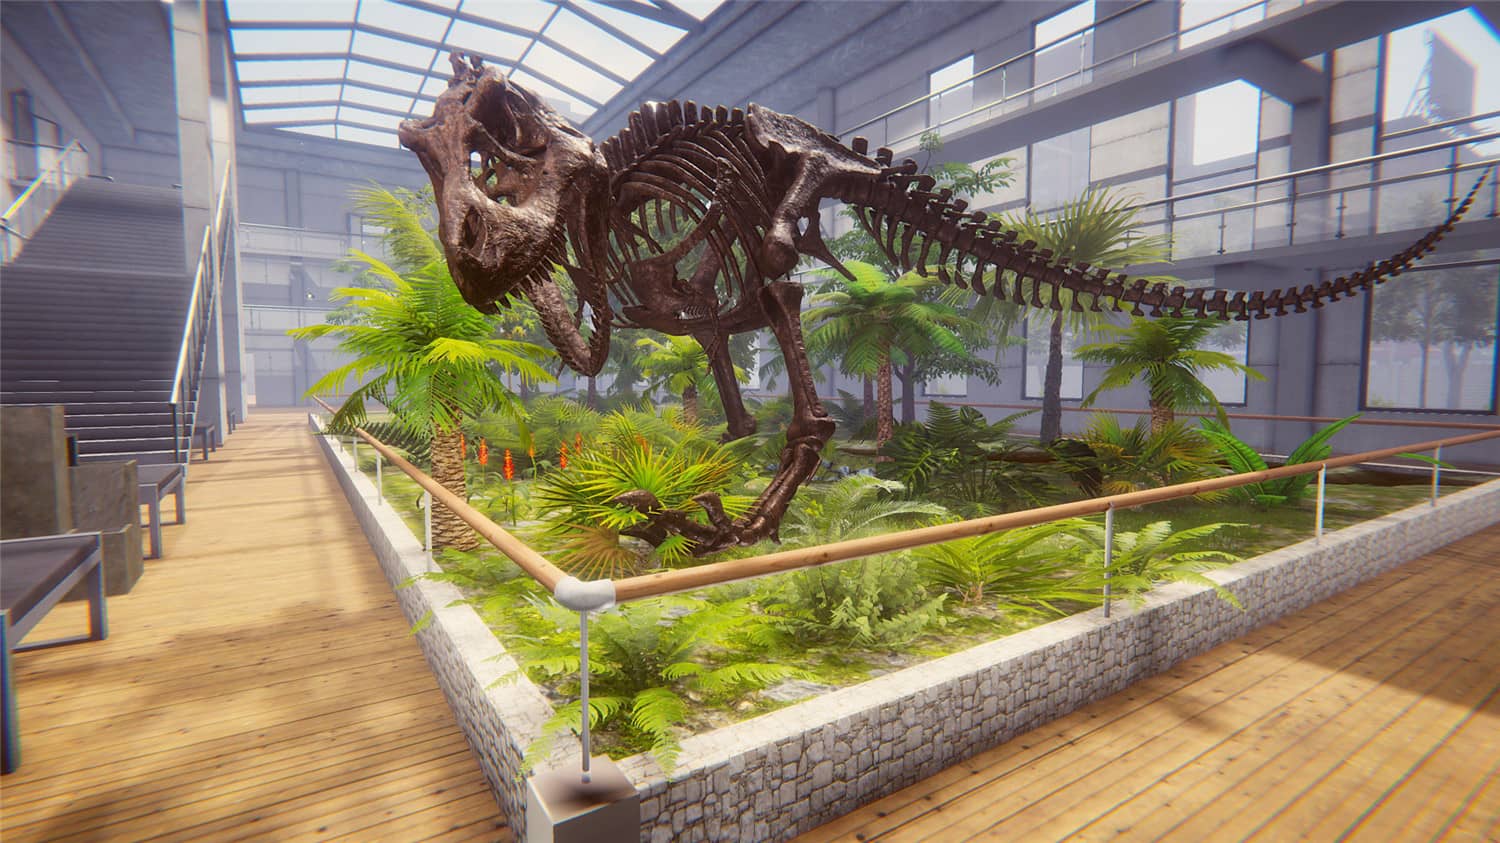 恐龙化石猎人 古生物学家模拟器/Dinosaur Fossil Hunter插图1